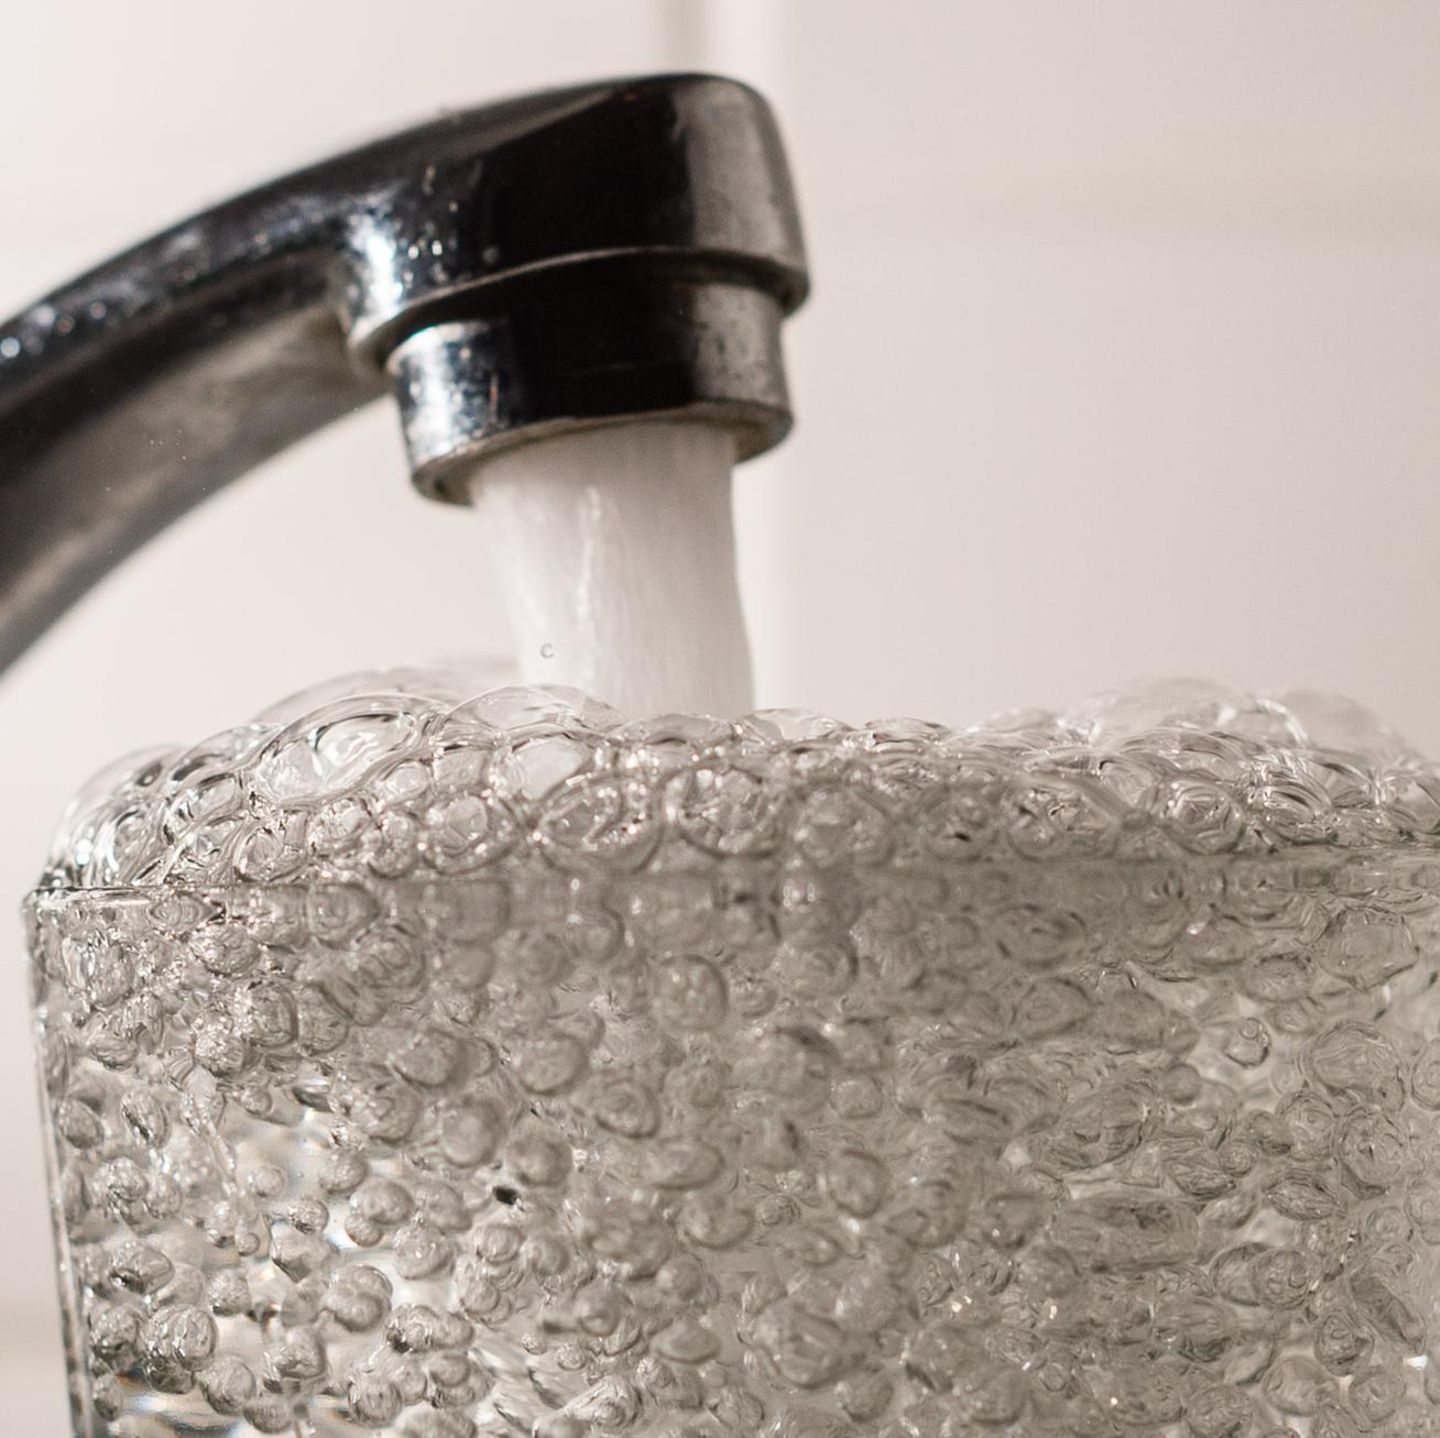 Wasserfilter: Die Wahrheit über teure Filter und ihren Nutzen